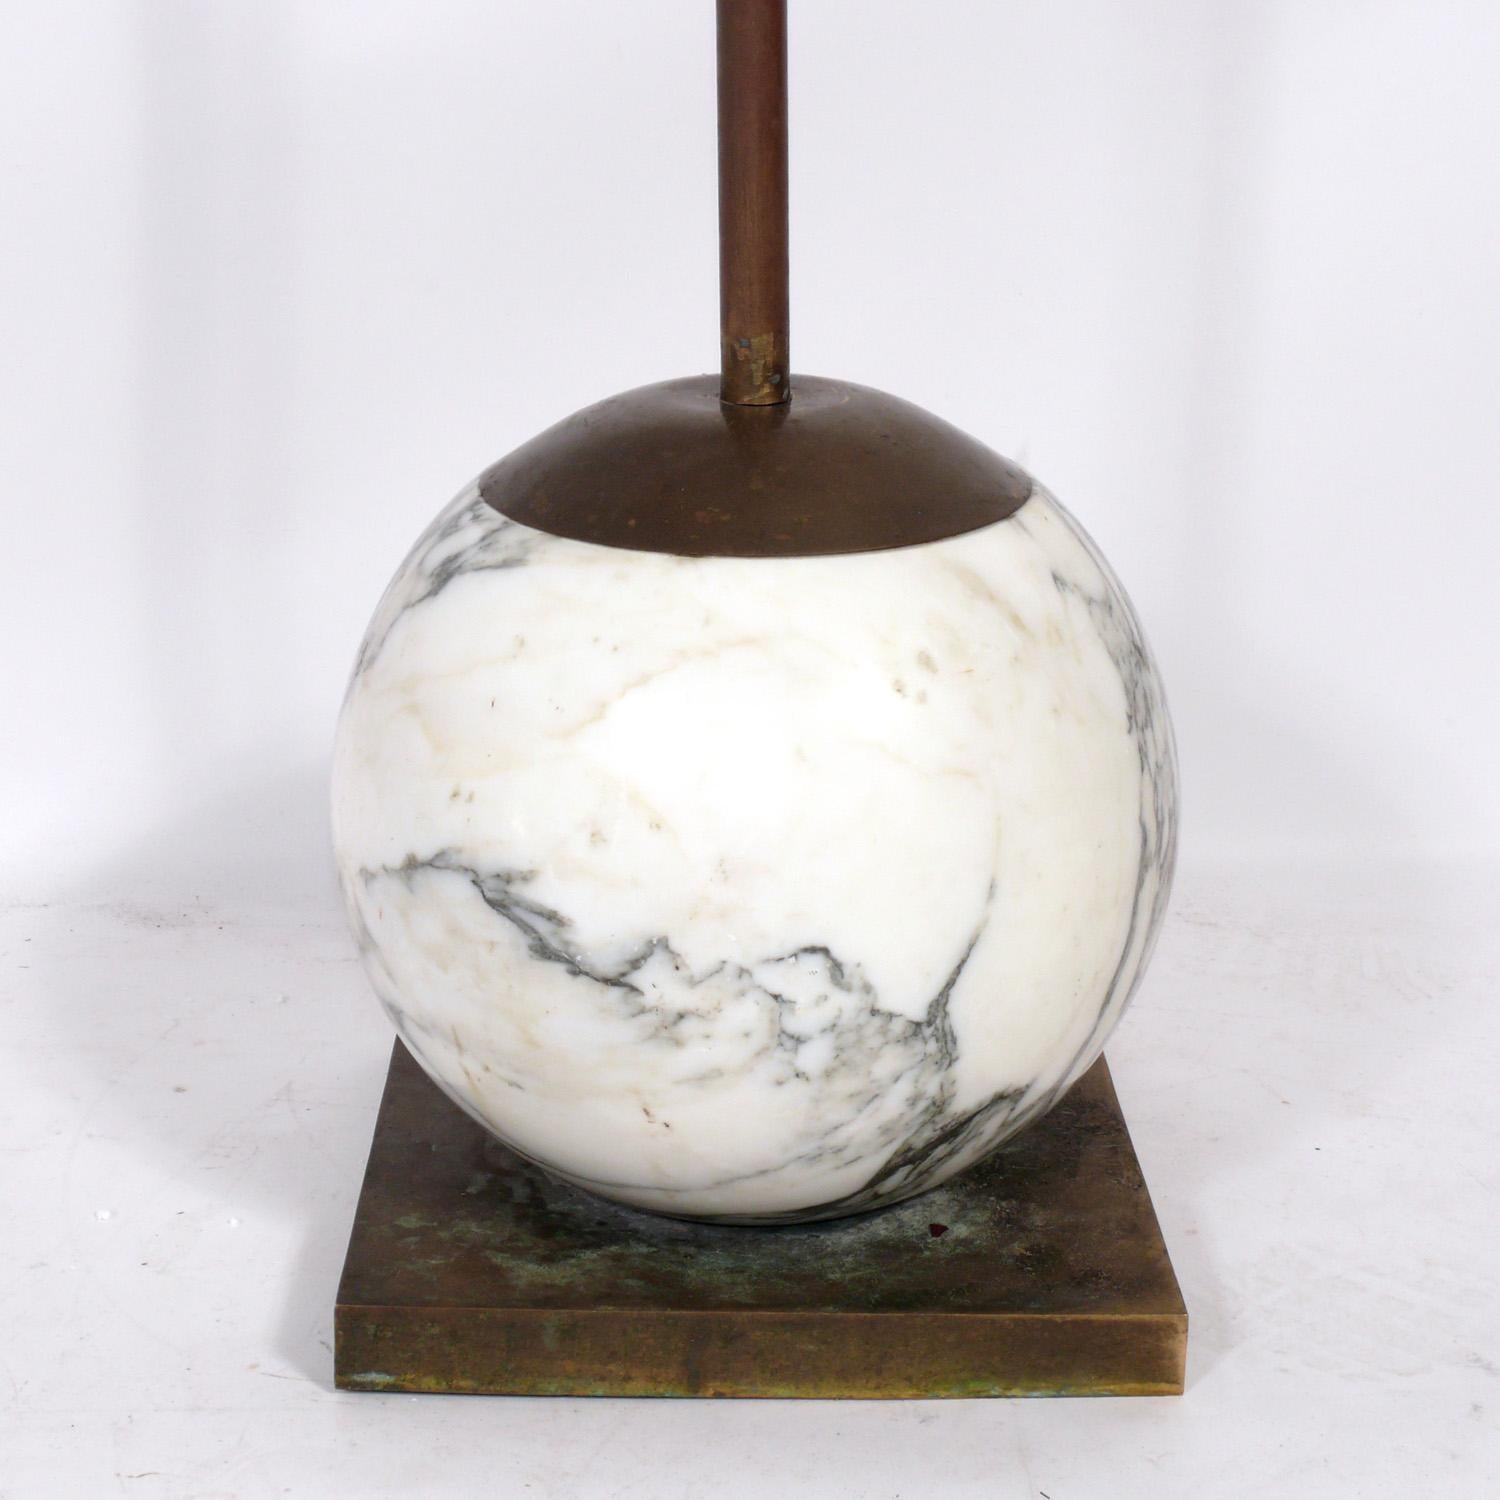 Lampadaire sculptural italien en forme de boule en marbre, Italie, vers les années 1980. Très lourd et bien fait. Recâblé et prêt à être utilisé. Le prix indiqué comprend l'abat-jour.